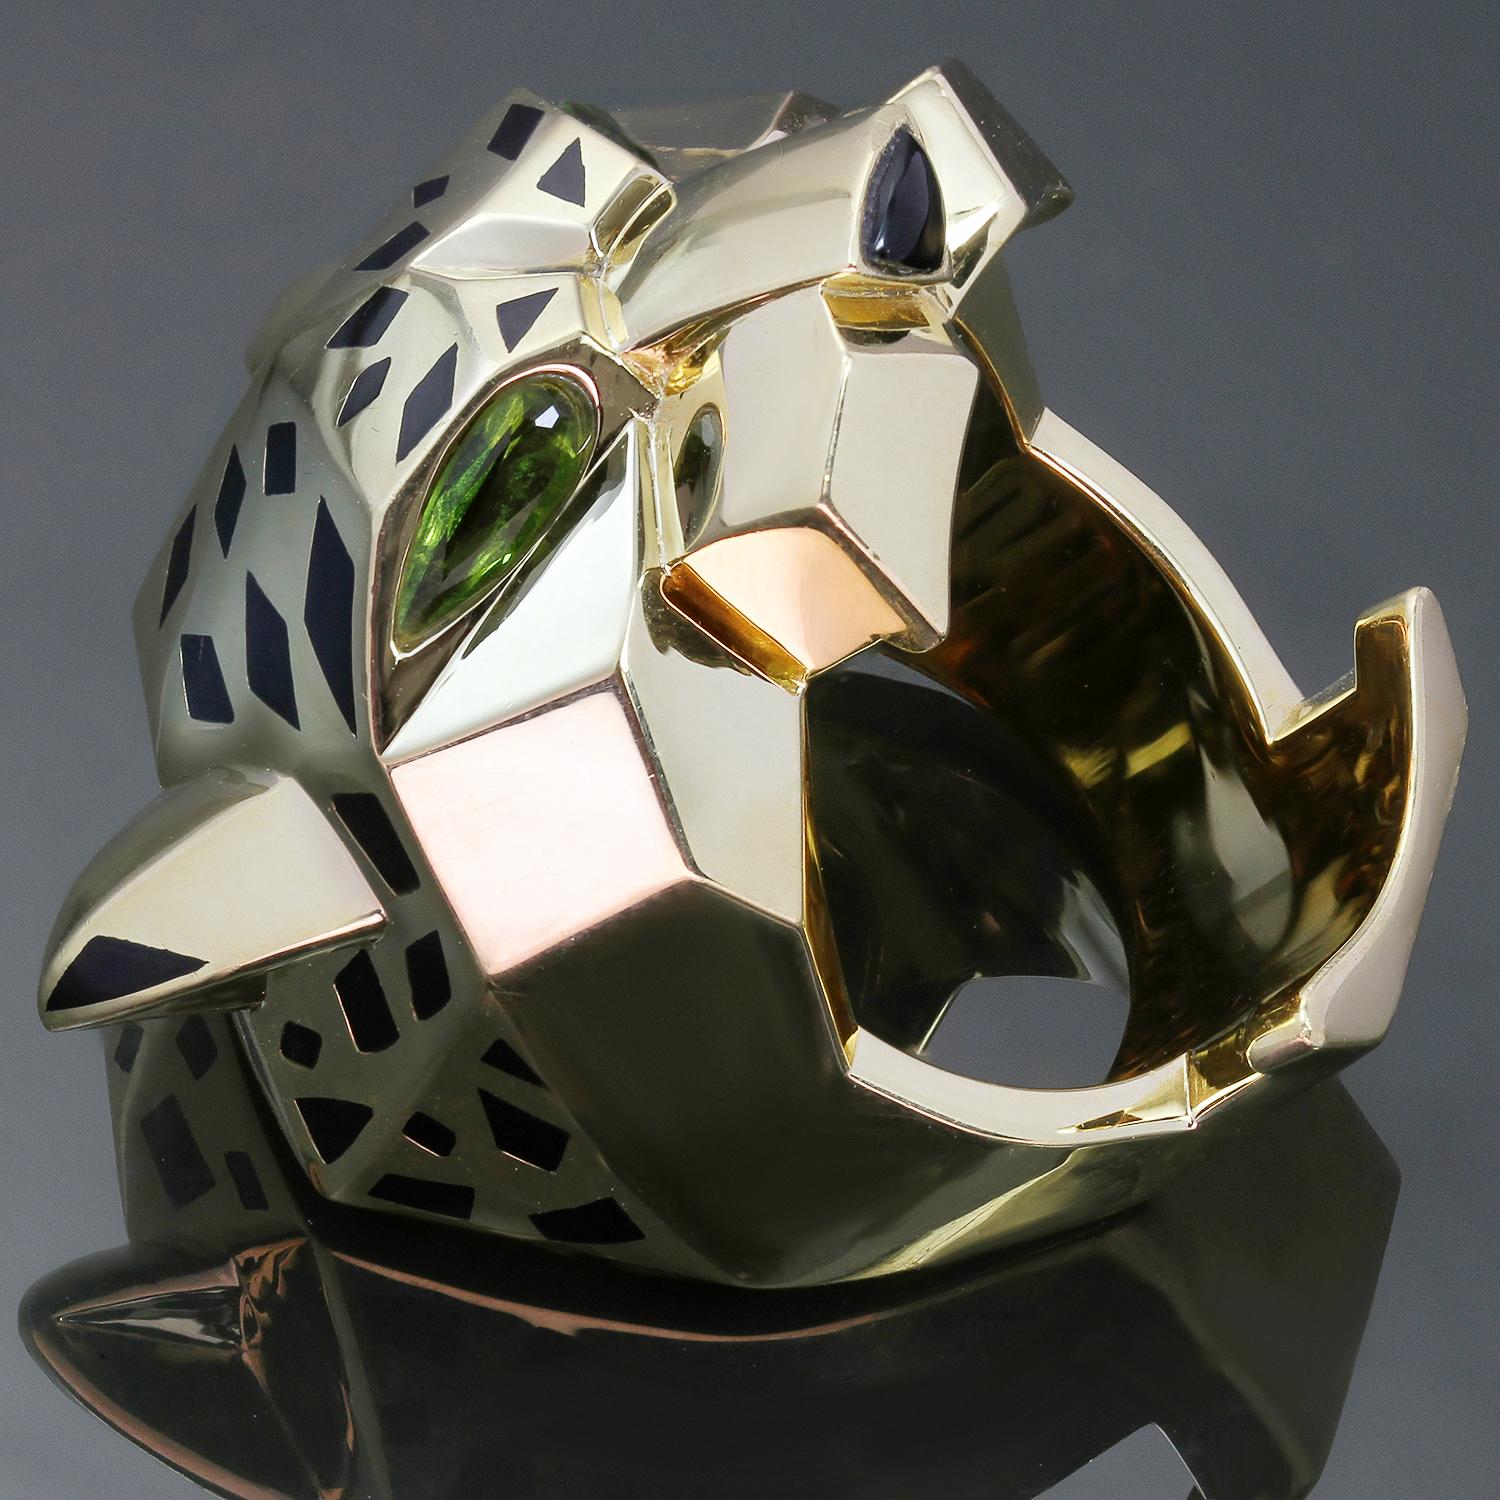 Dieser wunderschöne Unisex-Ring Panthère de Cartier zeigt ein kühnes und wildes durchbrochenes Pantherdesign, das aus 18 Karat Gelbgold mit schwarzem Lack gefertigt und mit grünen Peridot-Augen und einer schwarzen Onyxnase akzentuiert ist. Der Ring